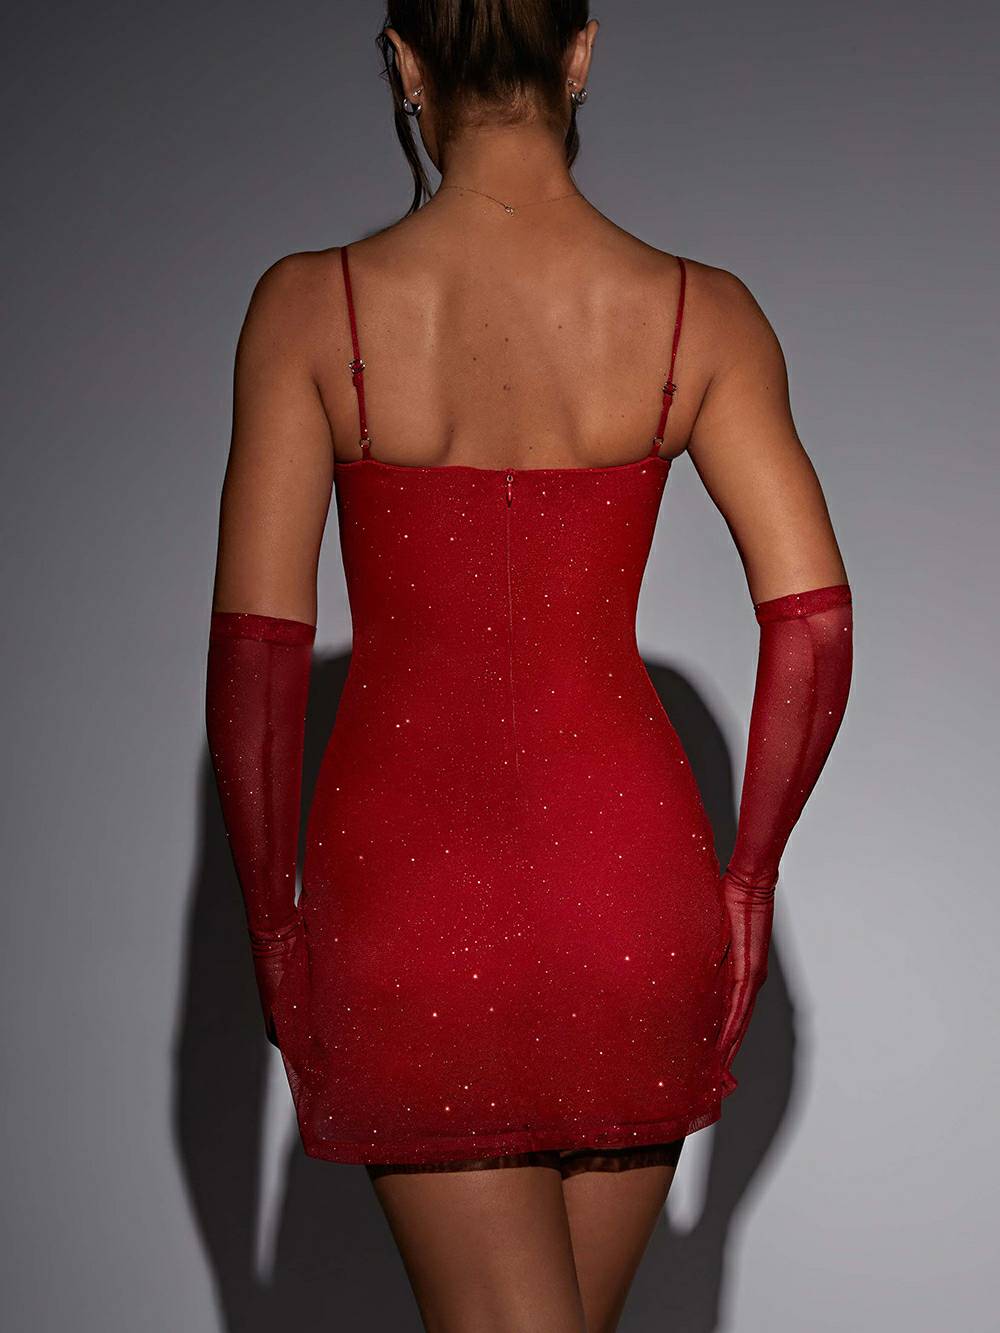 पिक्सी मिनी ड्रेस - लाल चमक